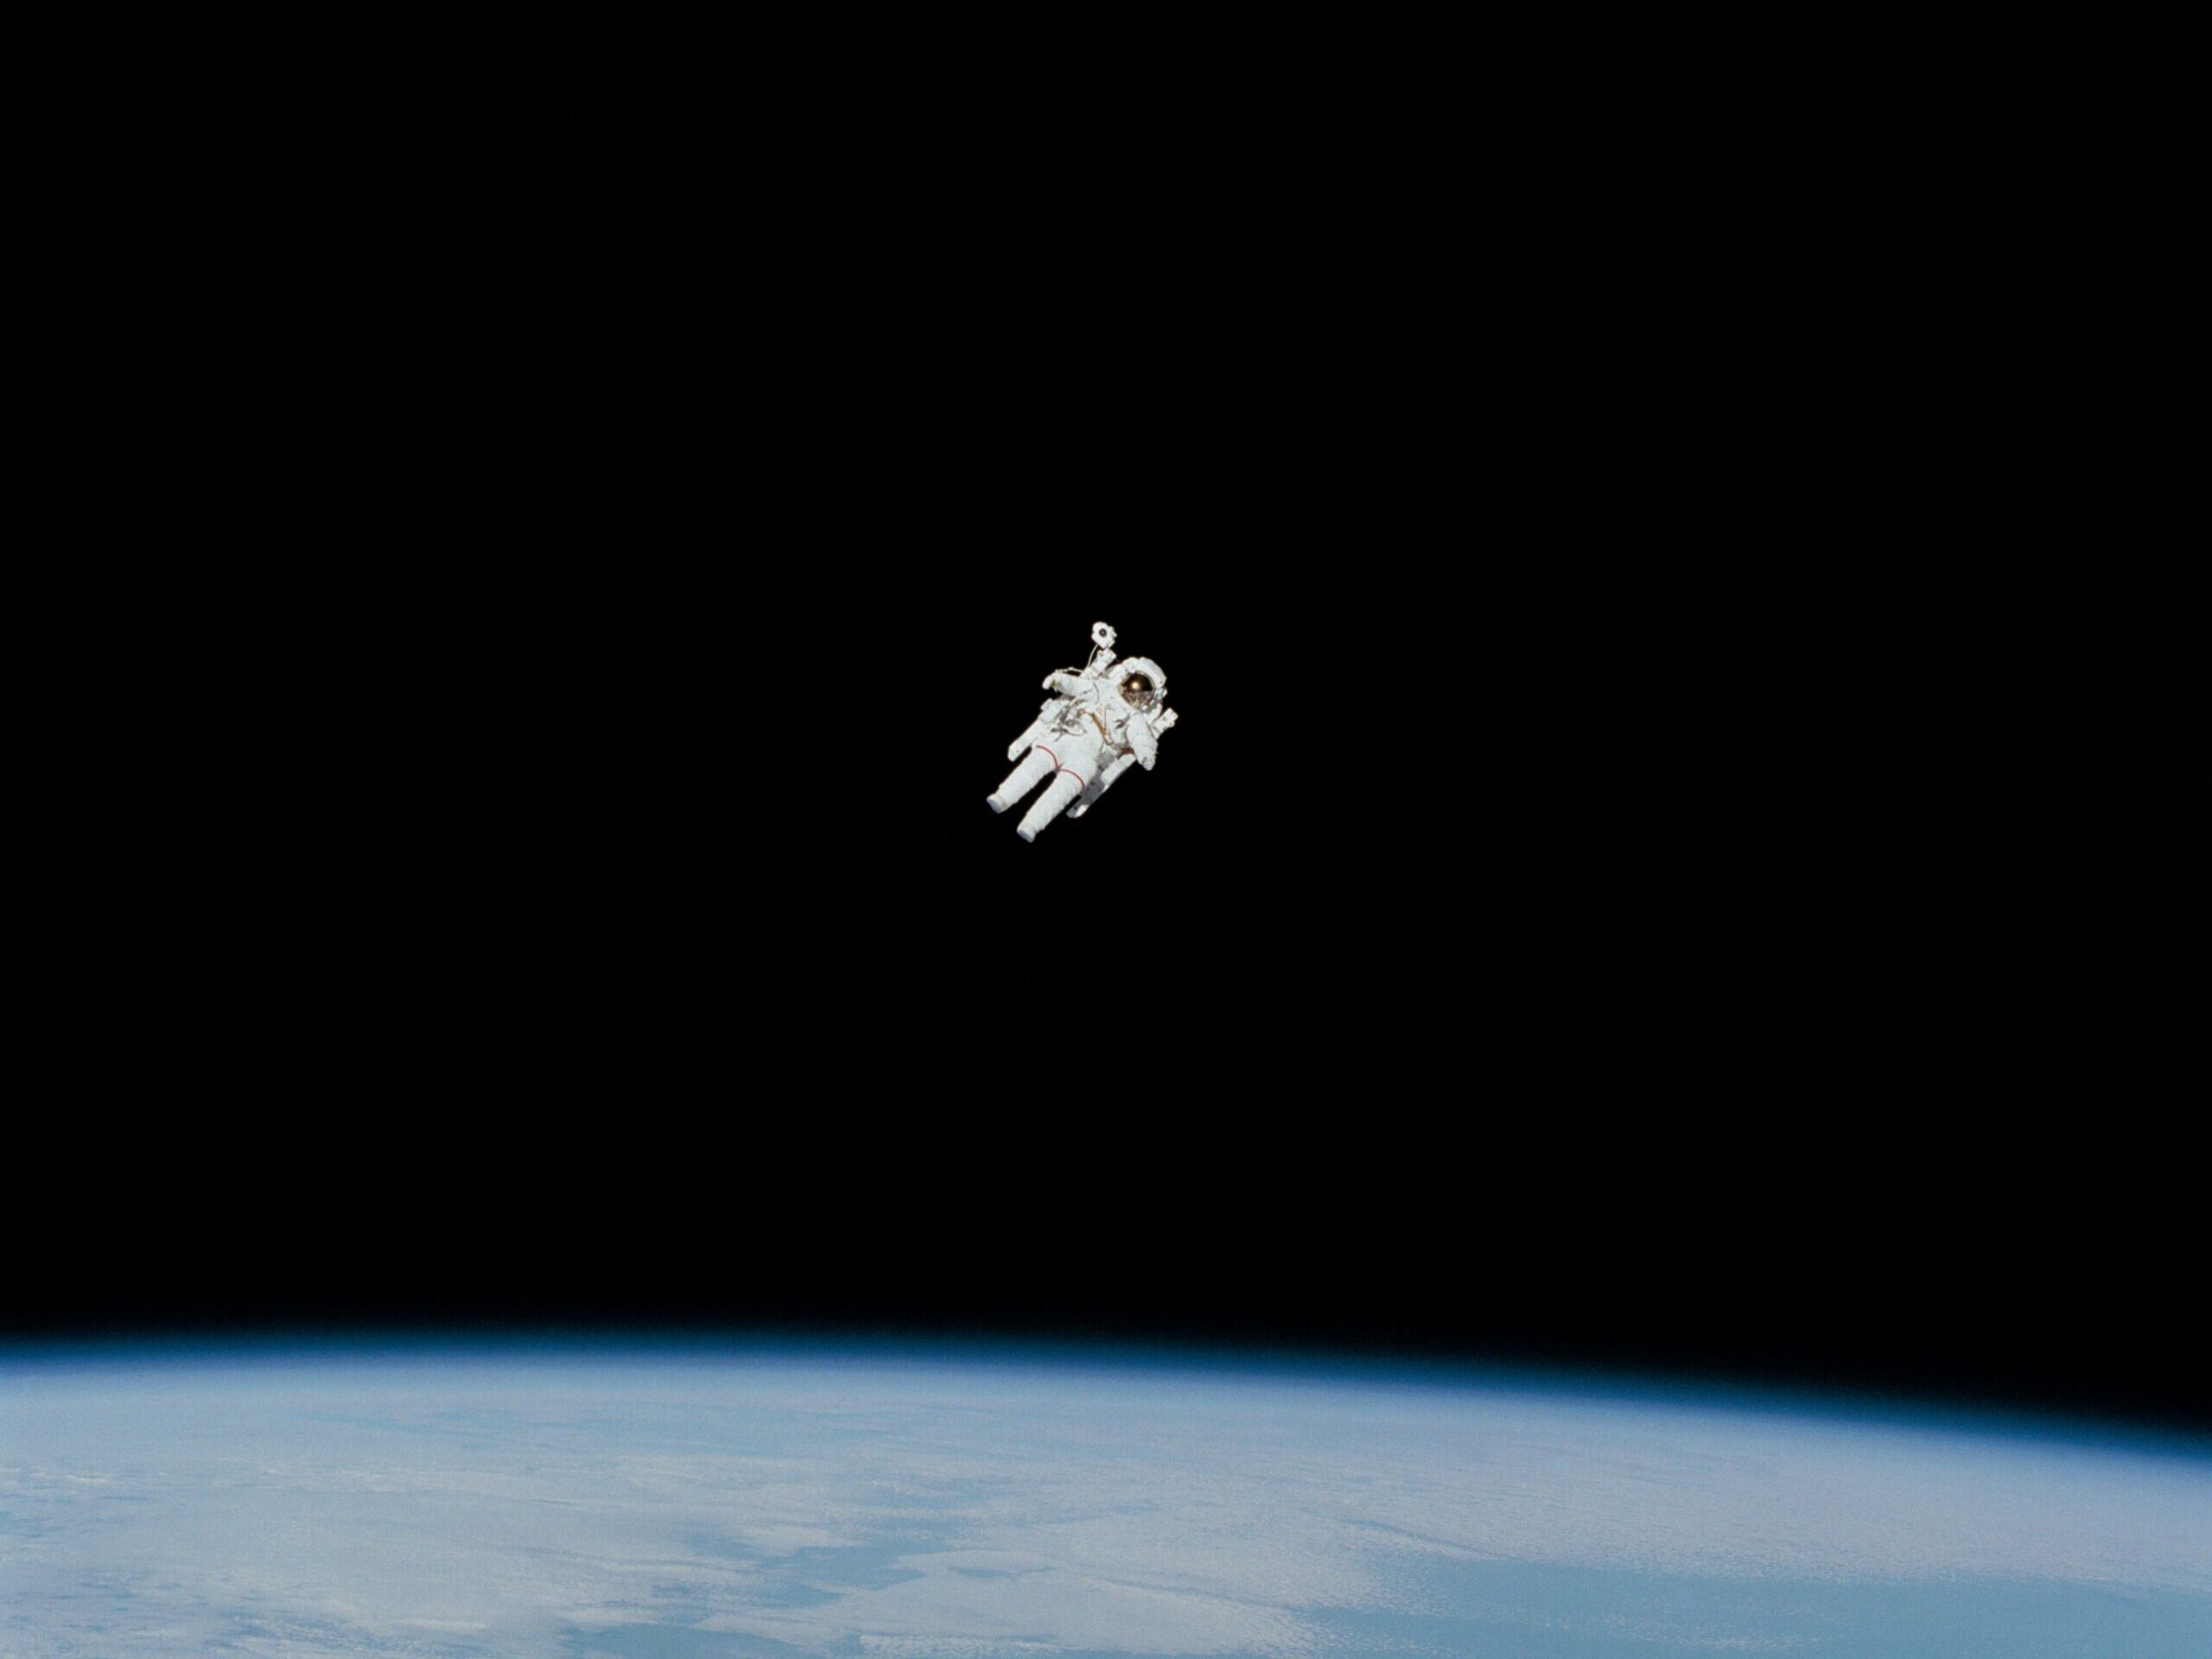 Nasa Astronaut